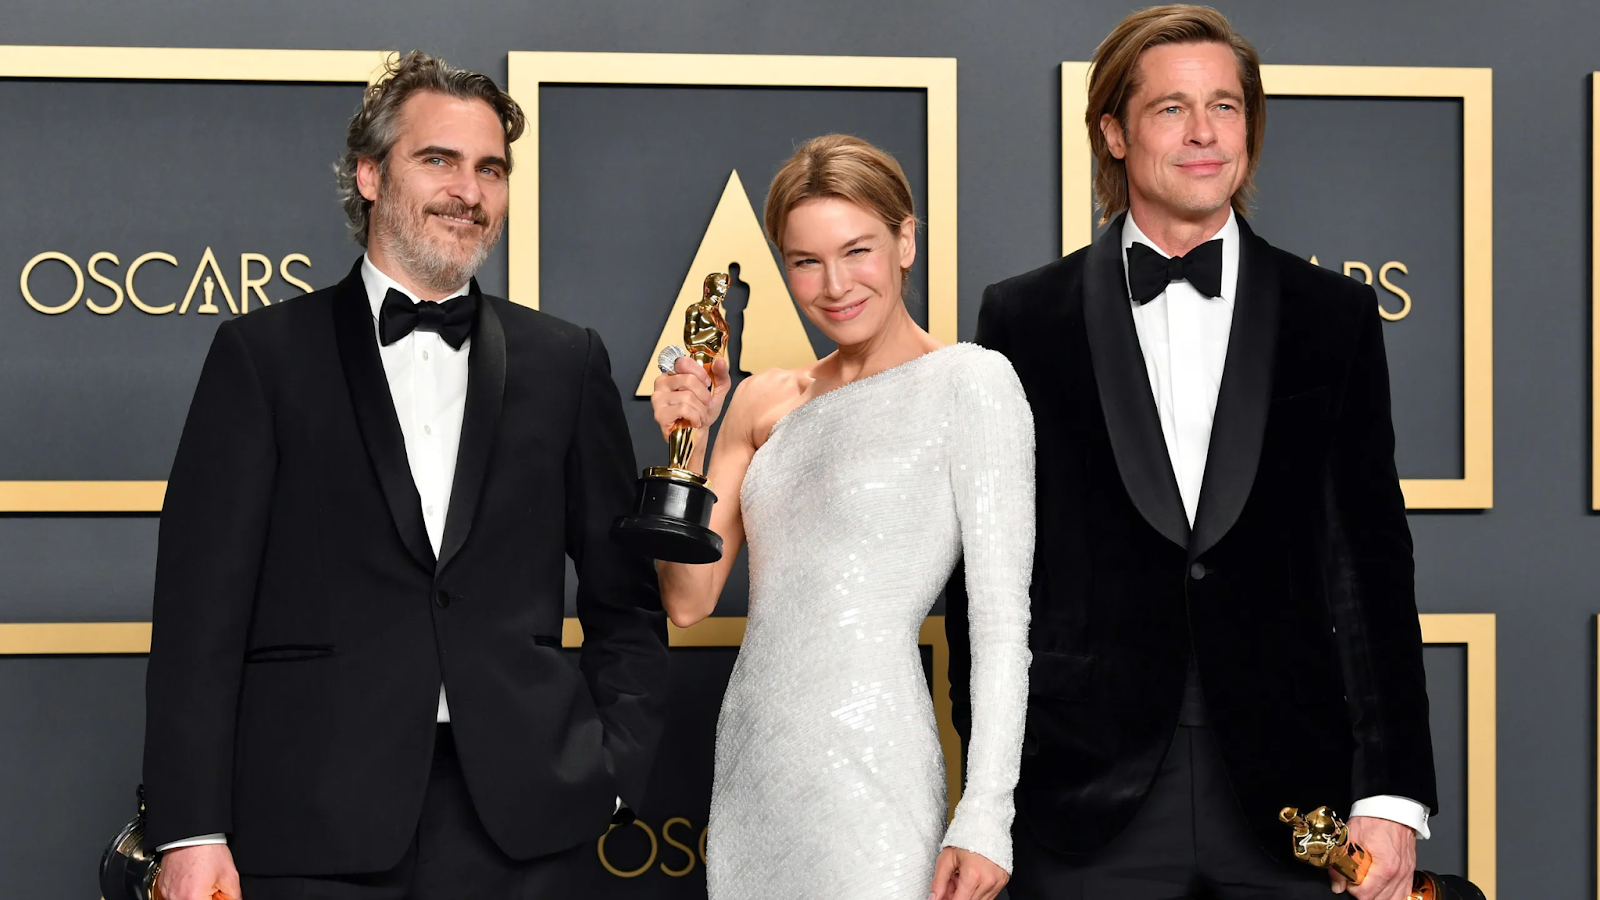 Оскар 2020: Полный список победителей и их влияние на киноиндустрию

###